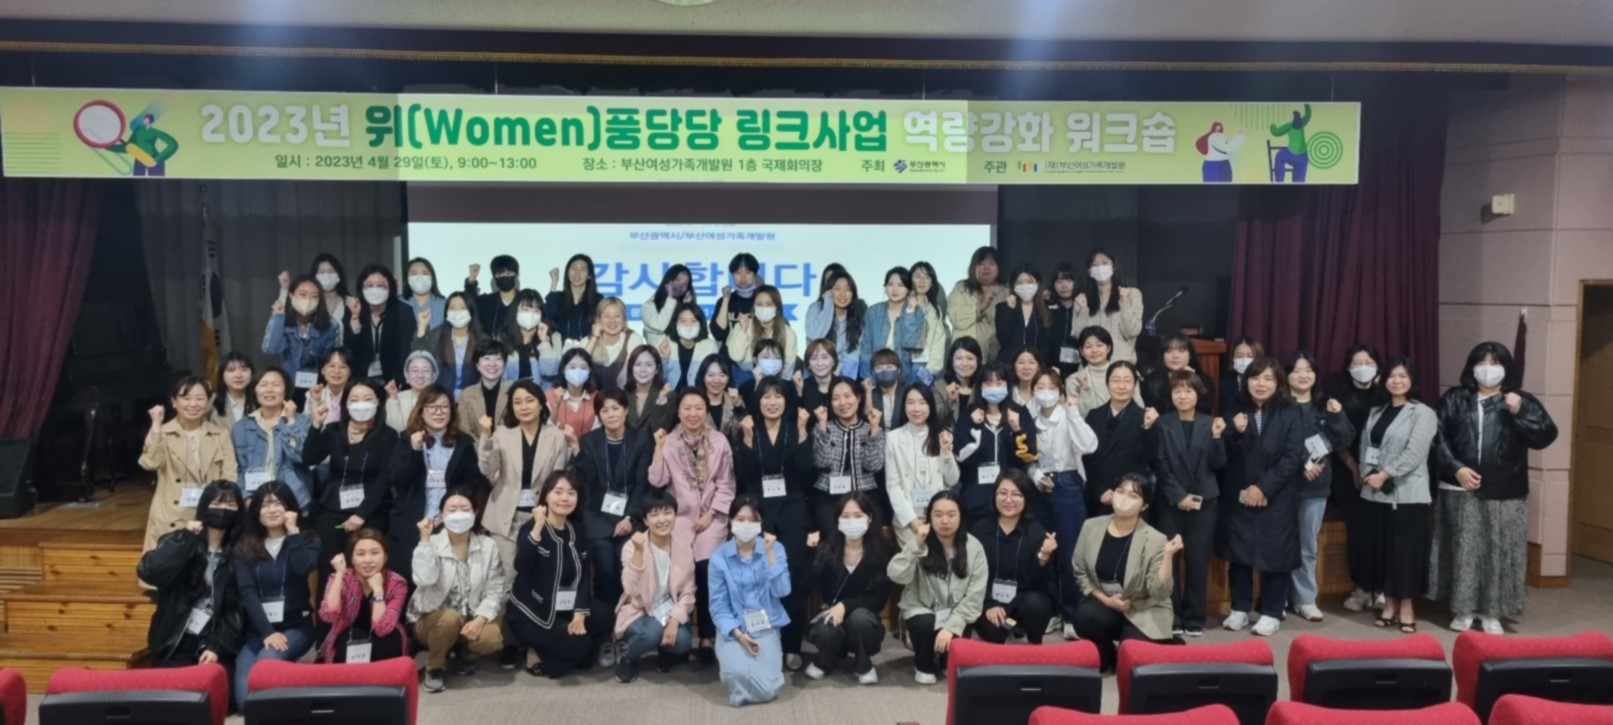 <2023년 위(Women)풍당당 링크사업 역량강화 워크숍> 개최